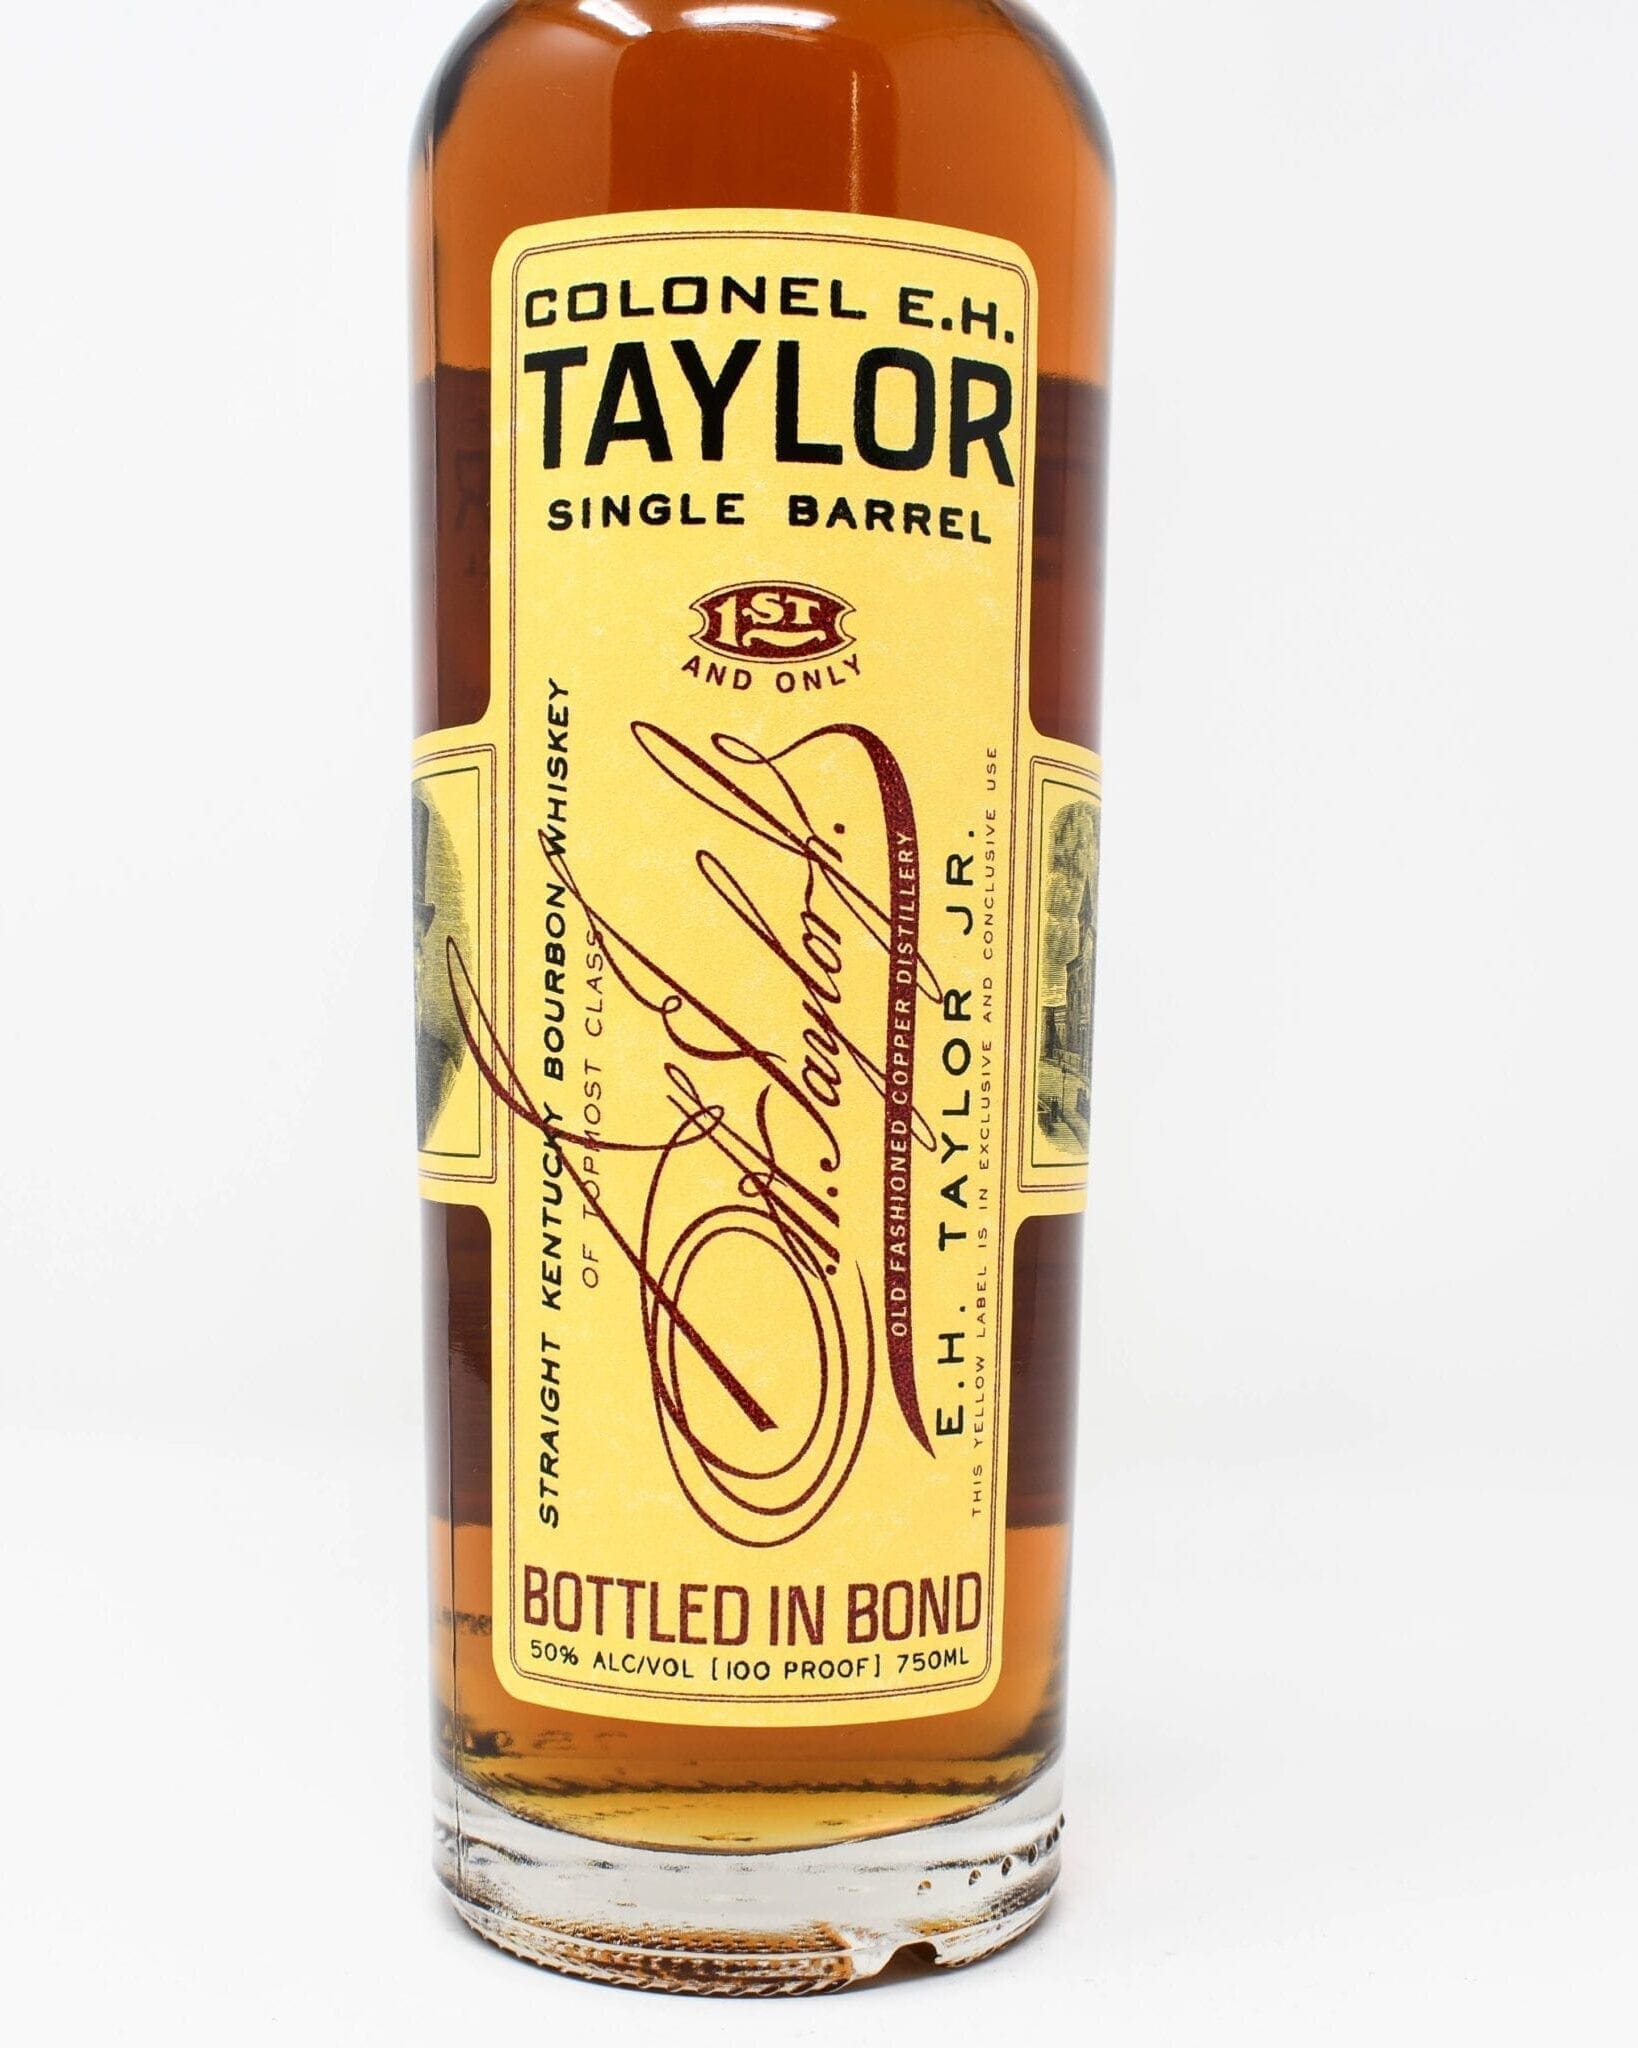 Colonel E.H. Taylor, Single Barrel Bourbon